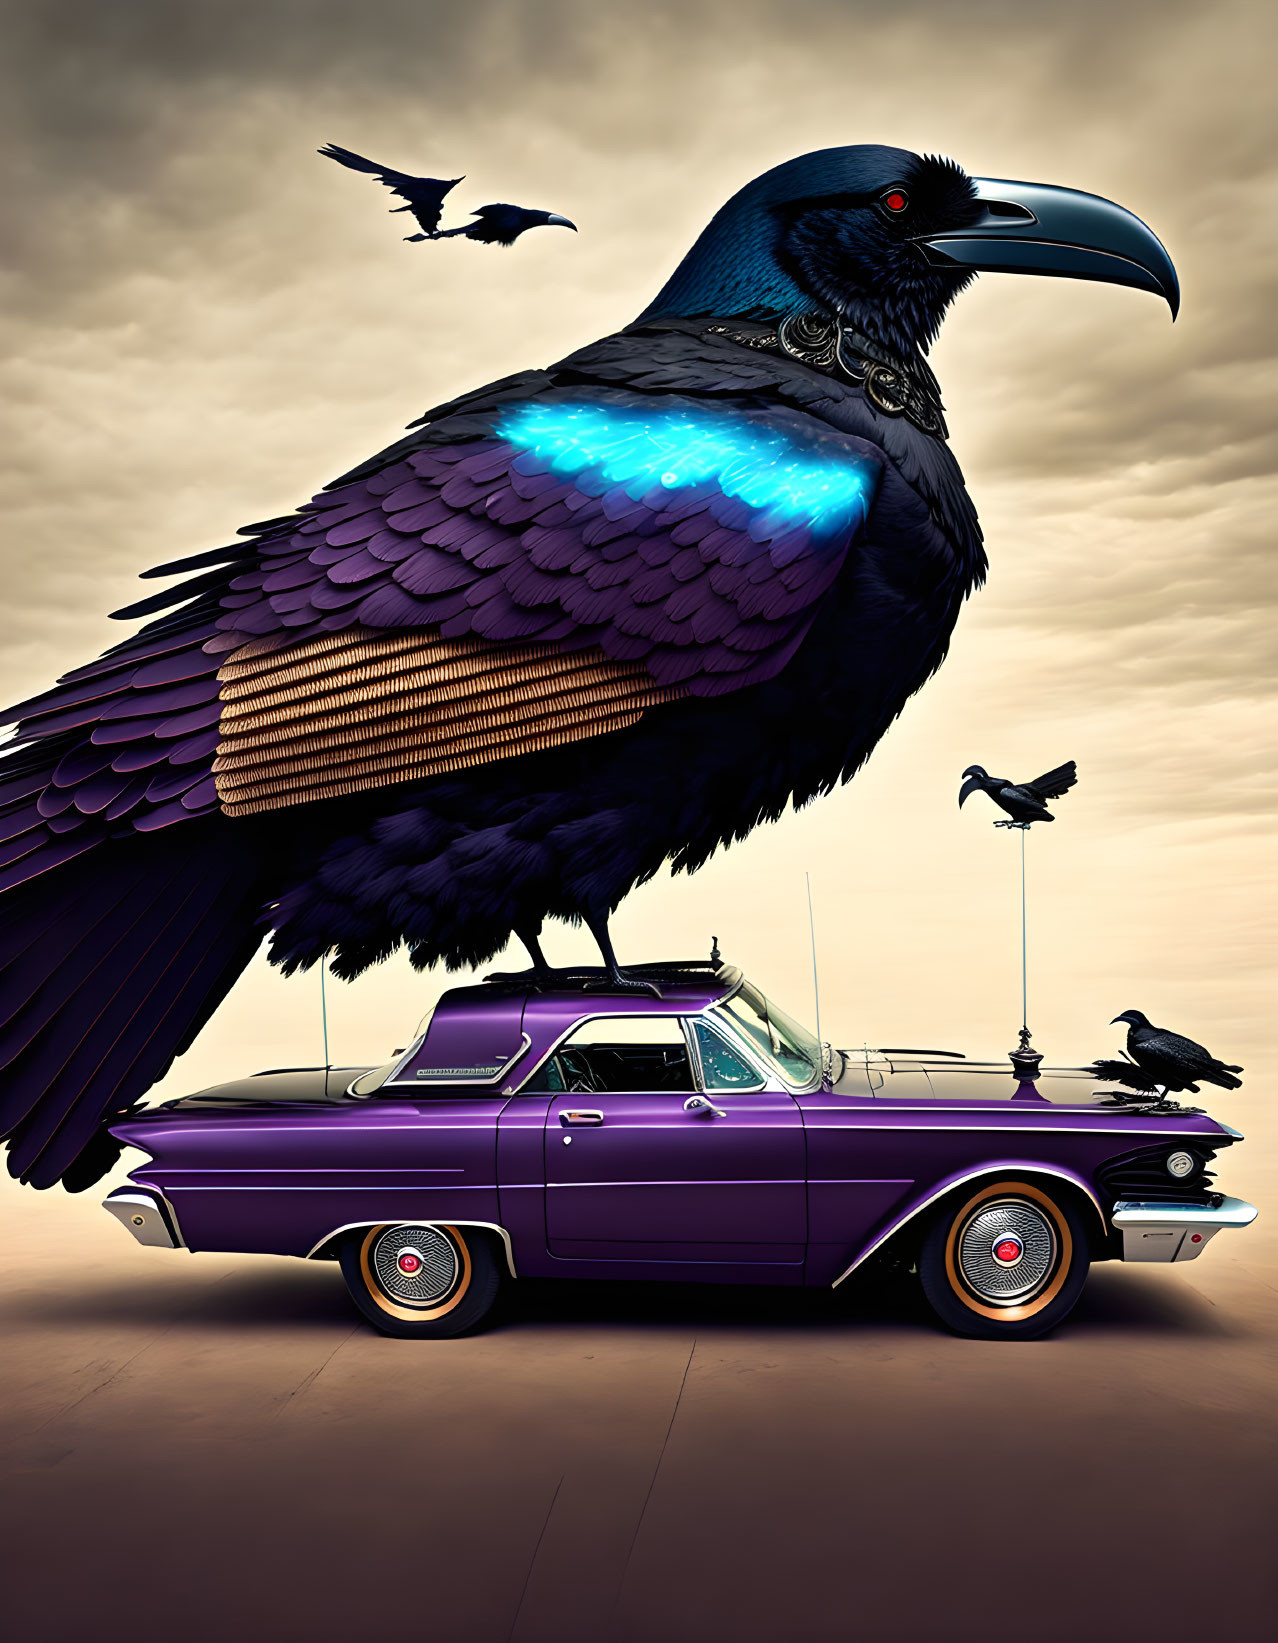 Gigantic raven on vintage car under dusky sky with flying birds